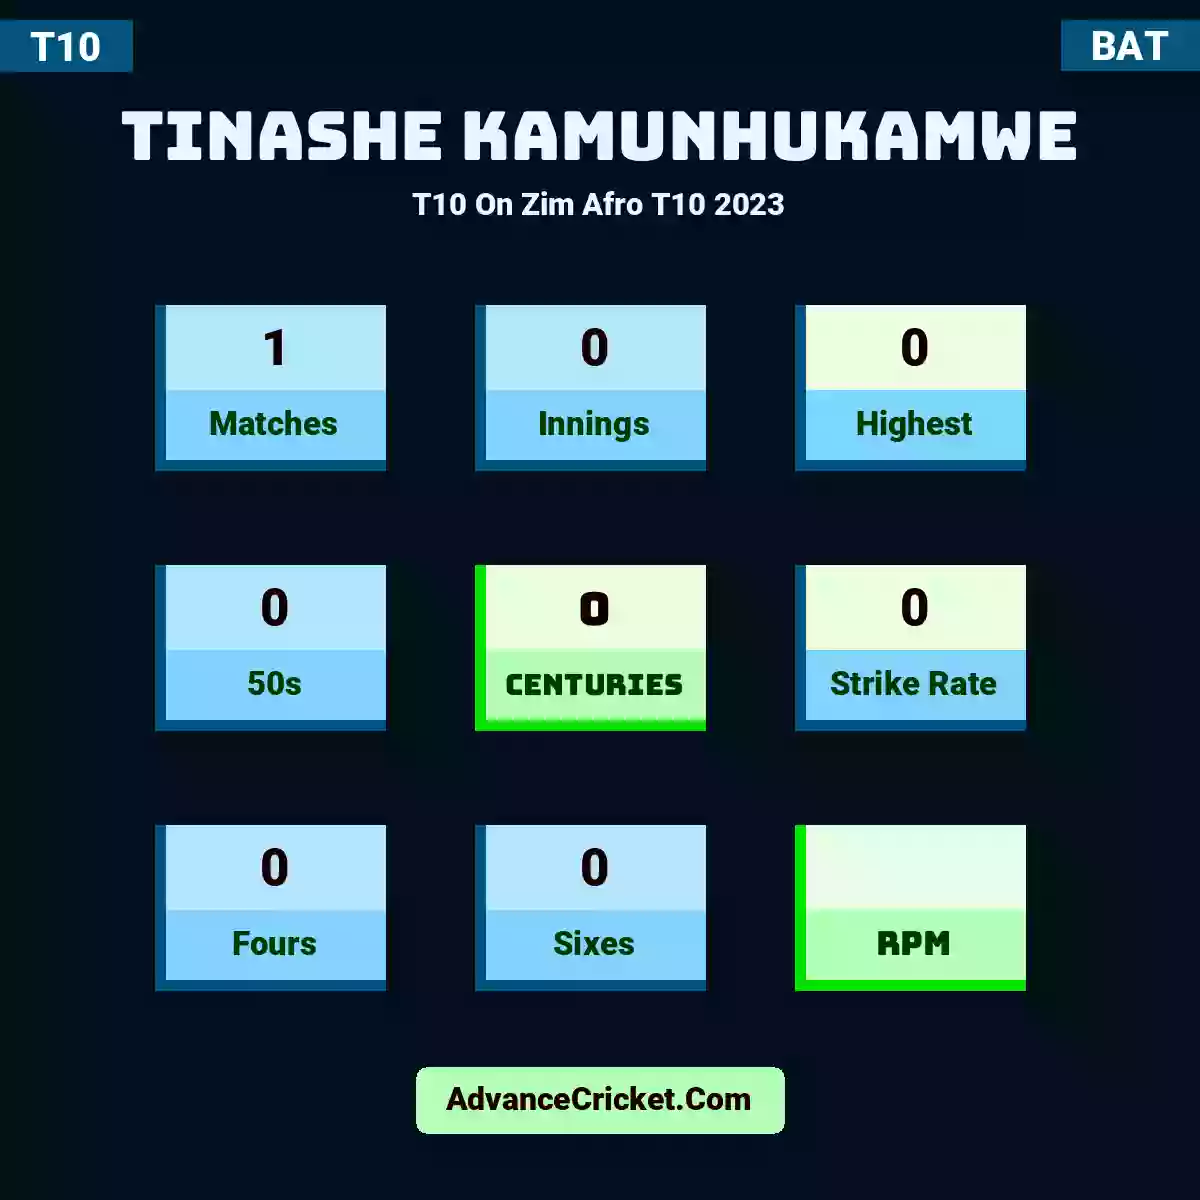 Tinashe Kamunhukamwe T10  On Zim Afro T10 2023, Tinashe Kamunhukamwe played 1 matches, scored 0 runs as highest, 0 half-centuries, and 0 centuries, with a strike rate of 0. T.Kamunhukamwe hit 0 fours and 0 sixes.